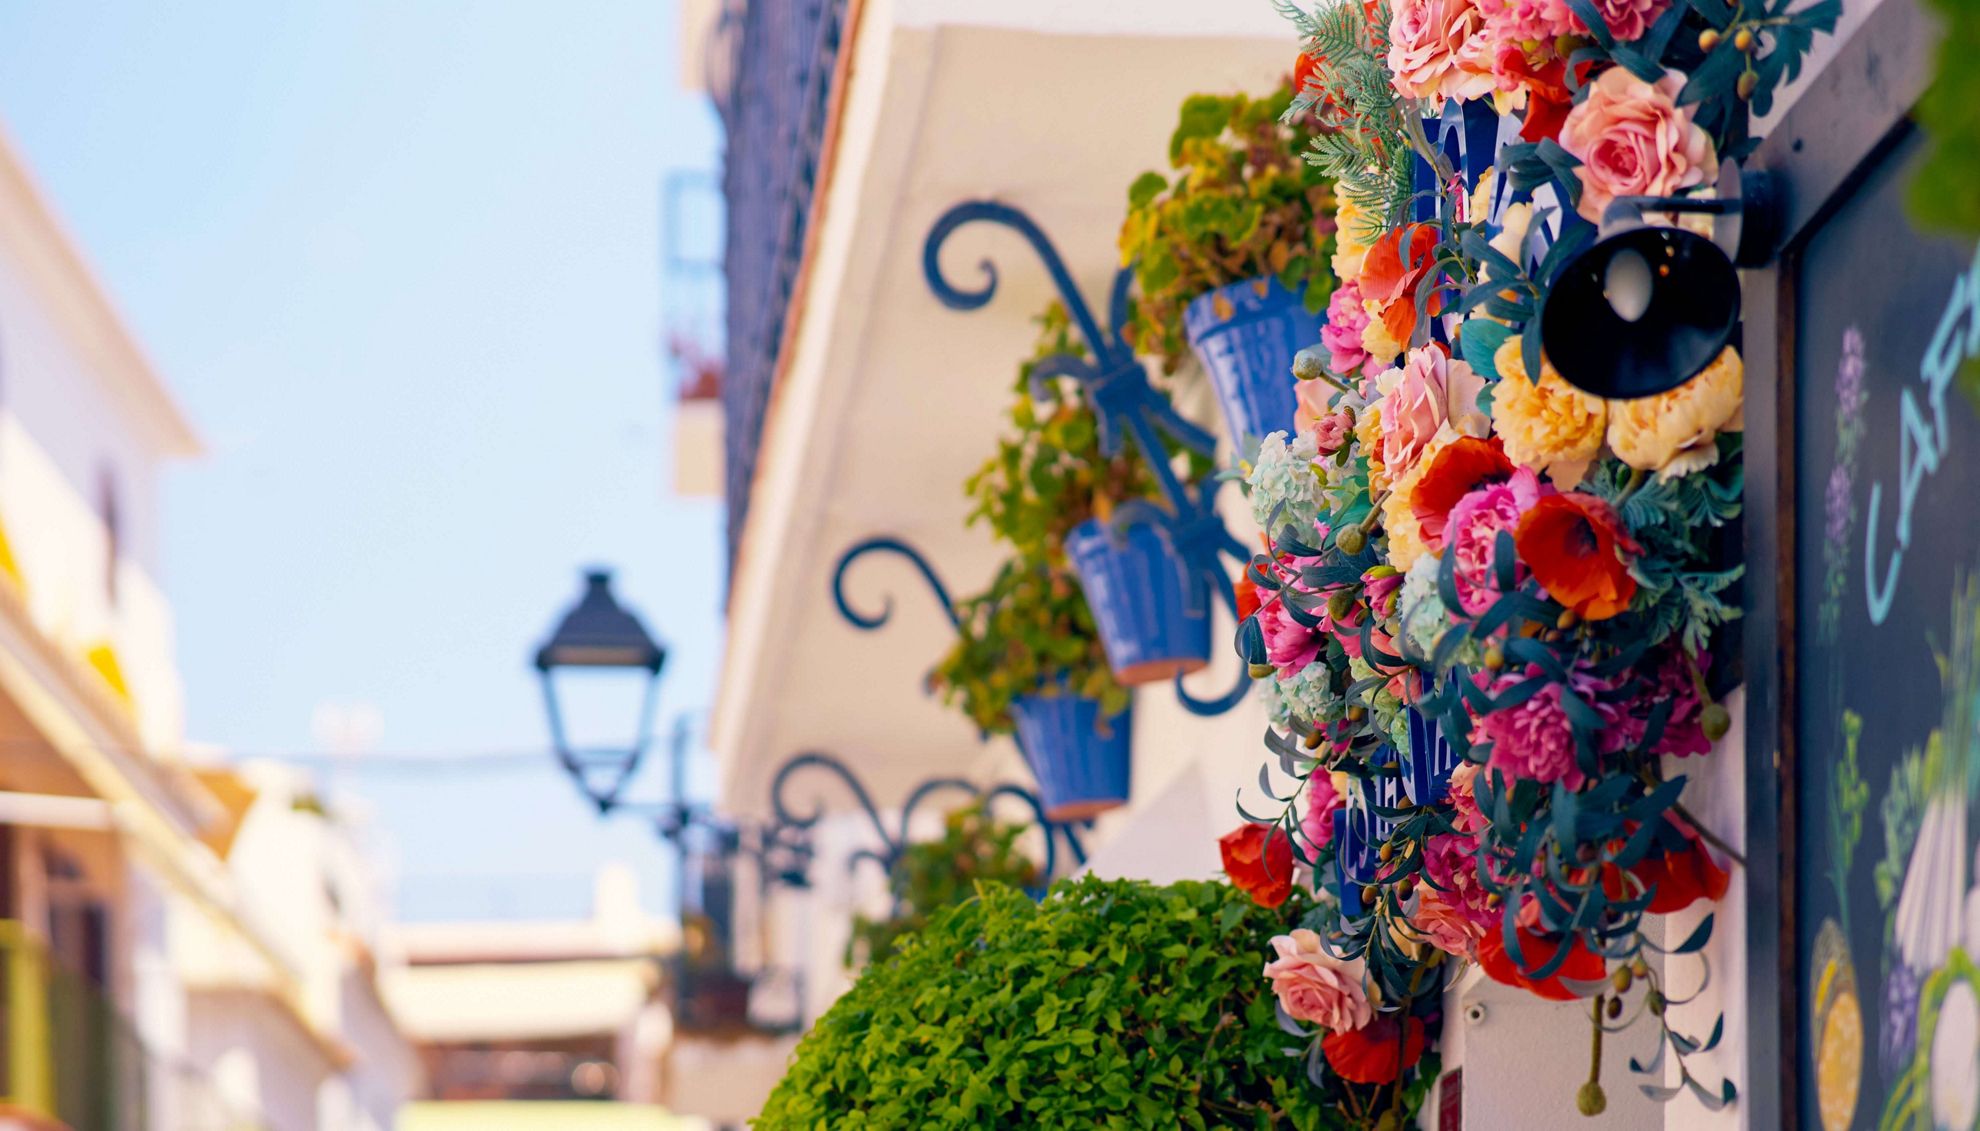 Blumentopf an einer Häuserfassade in Marbella.